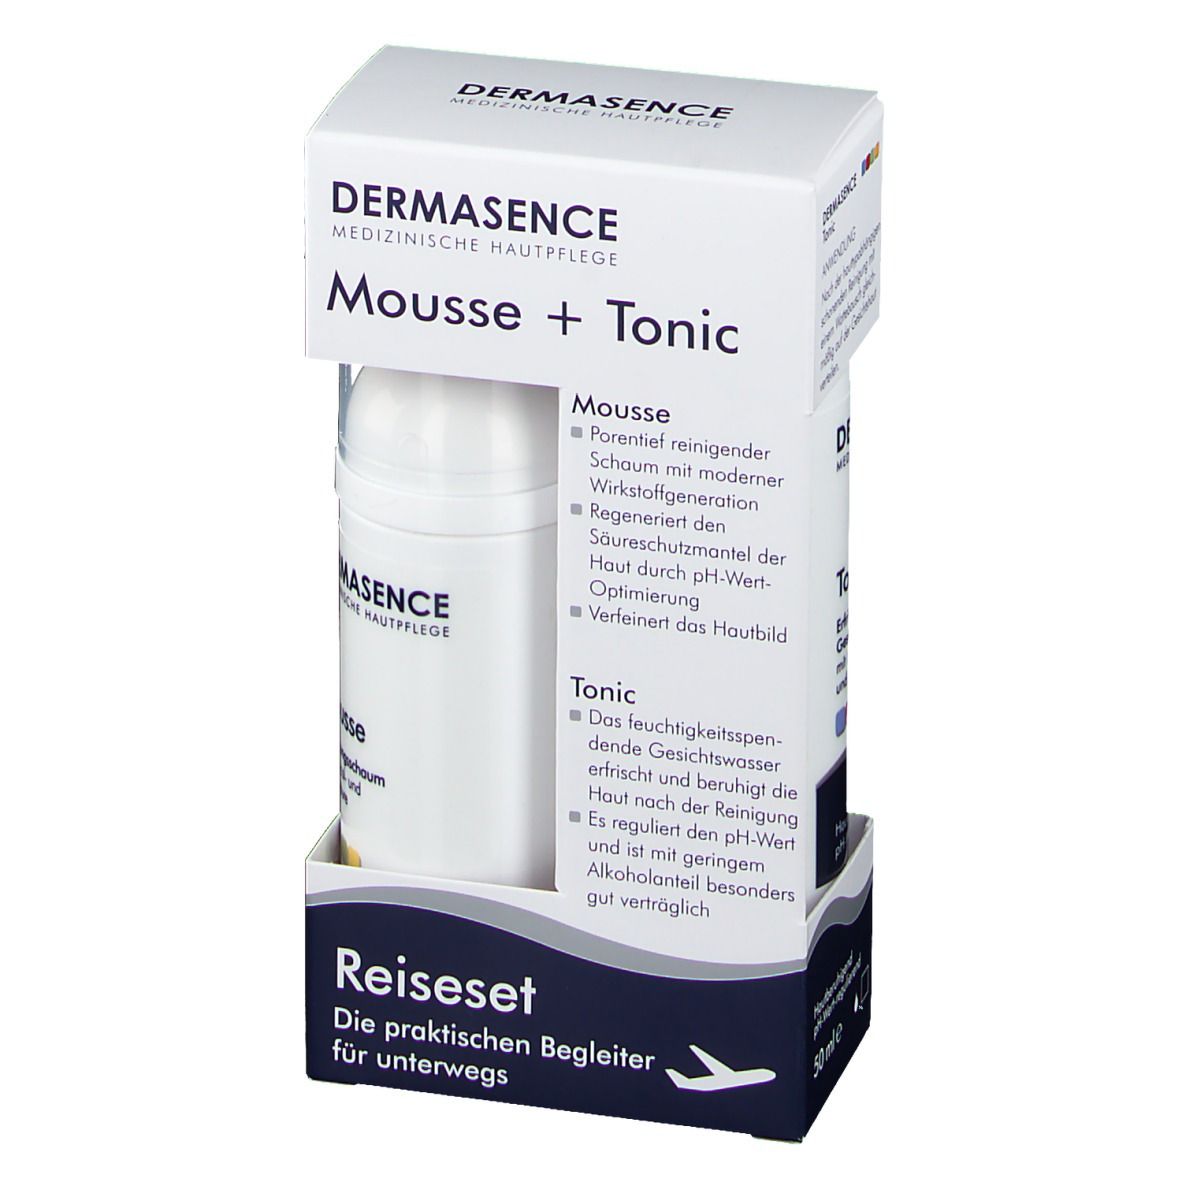 DERMASENCE Reiseset DERMASENCE Tonic / Mousse